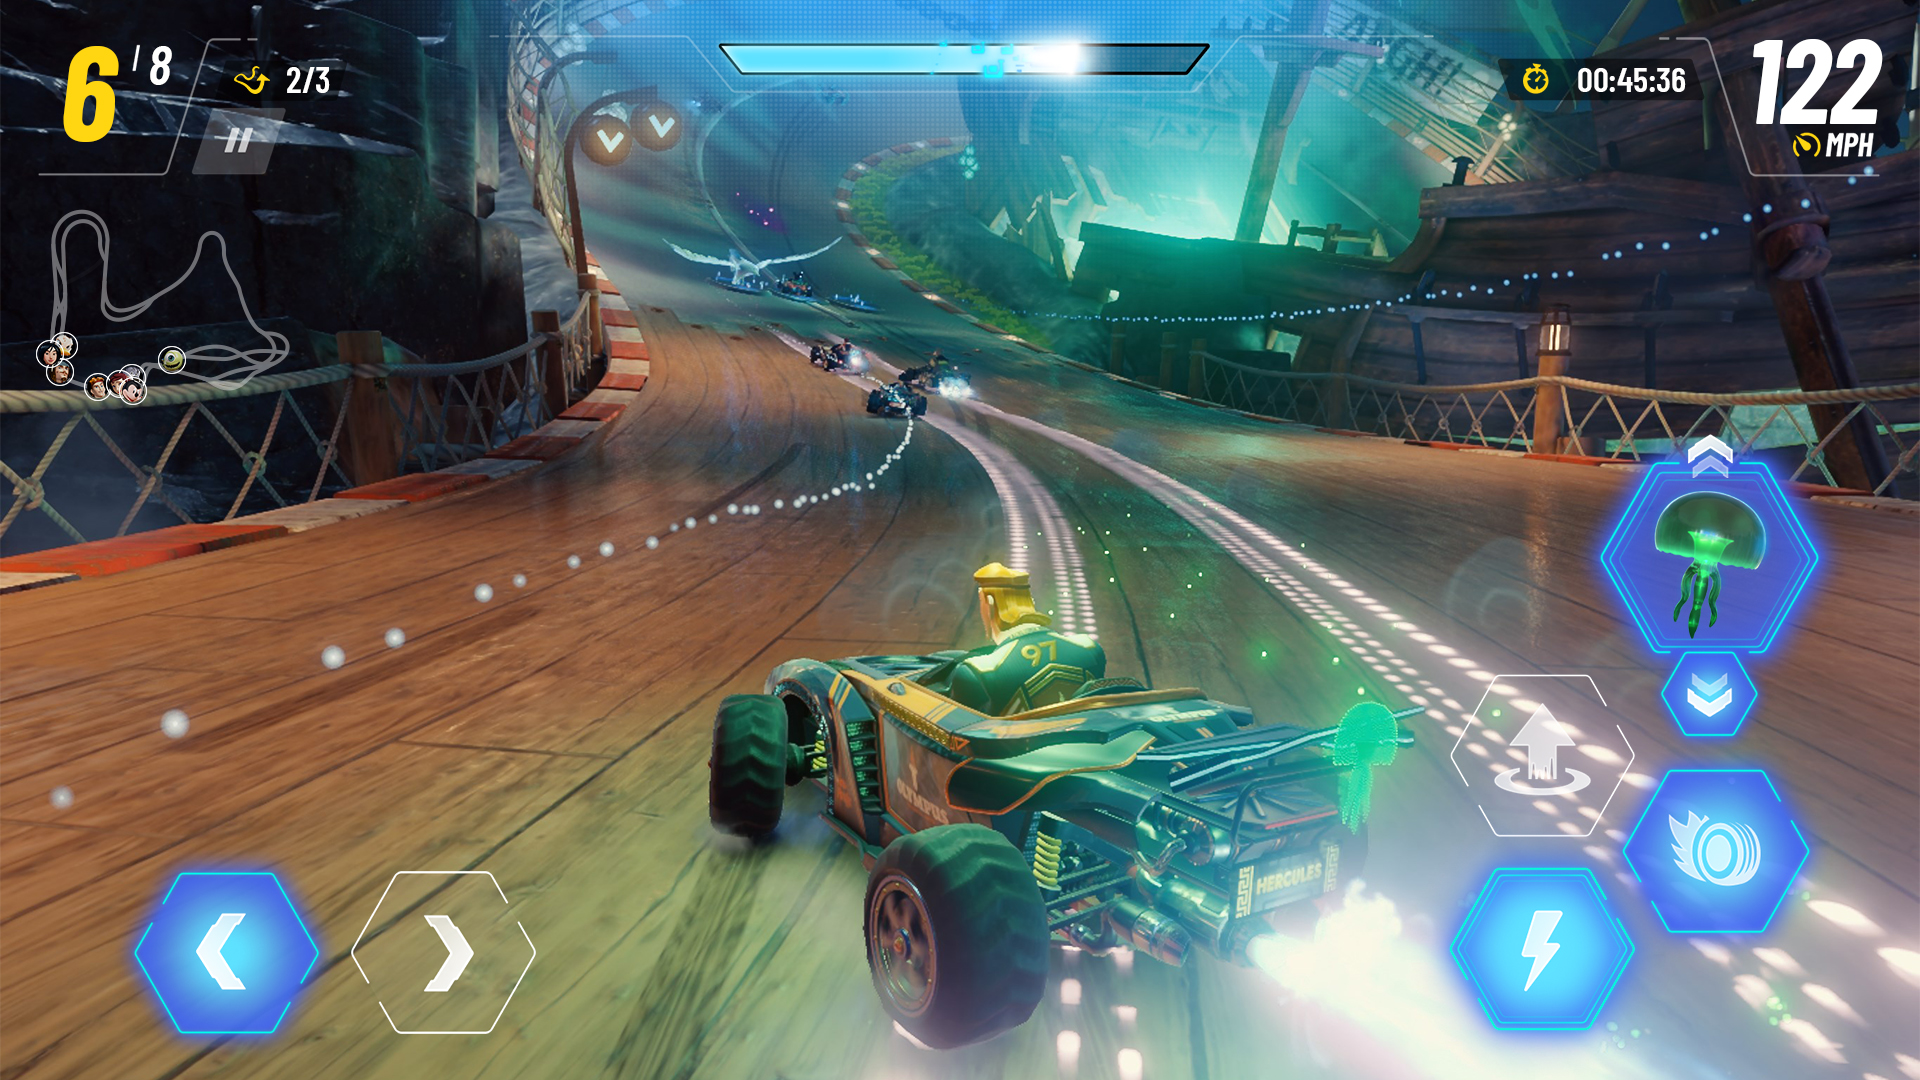 Disney Speedstorm - Android game screenshots.